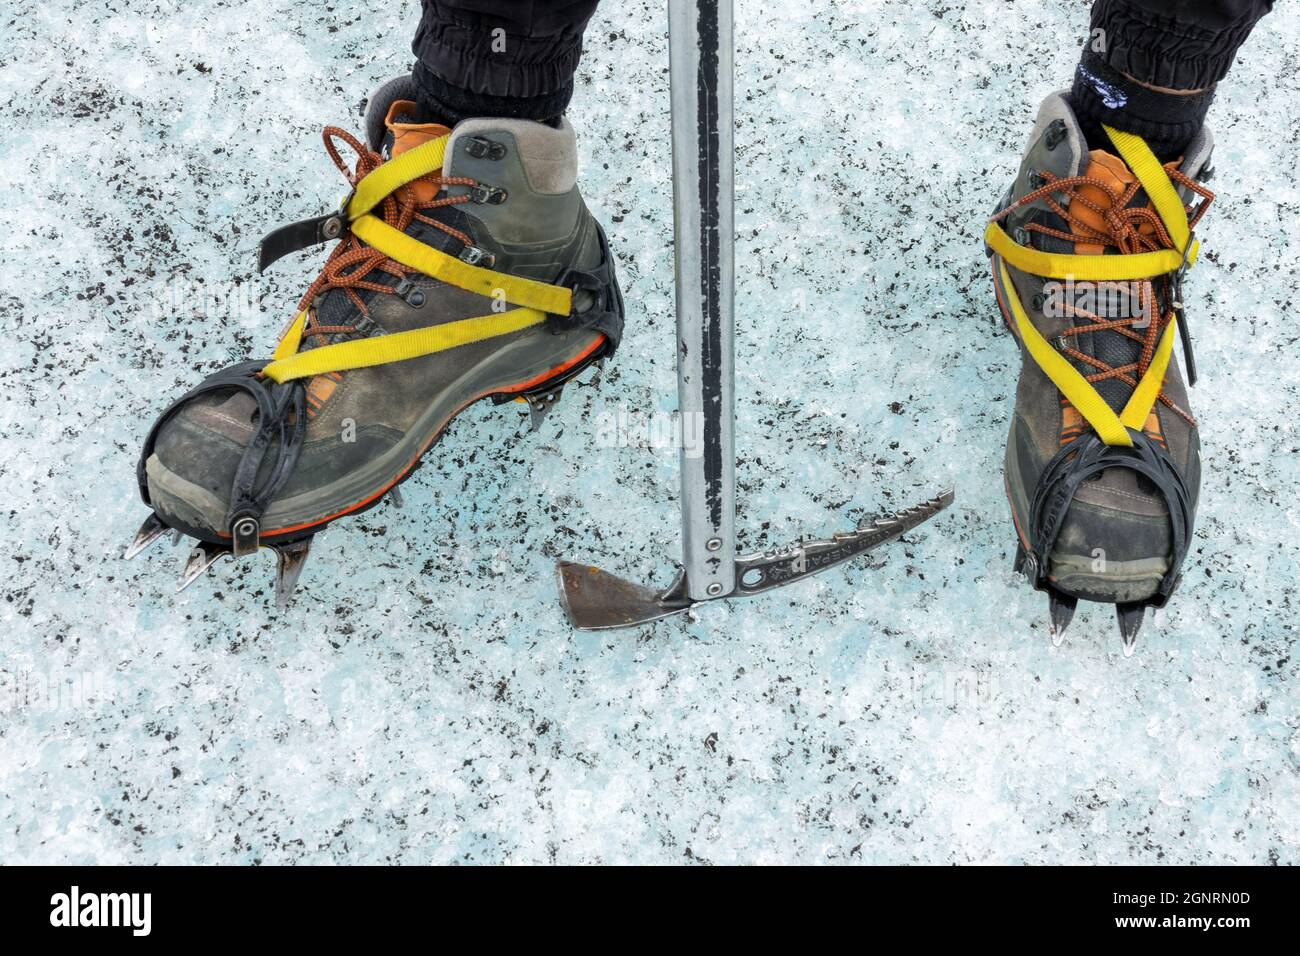 Détail des chaussures avec crampons et hache à glace. Promenade